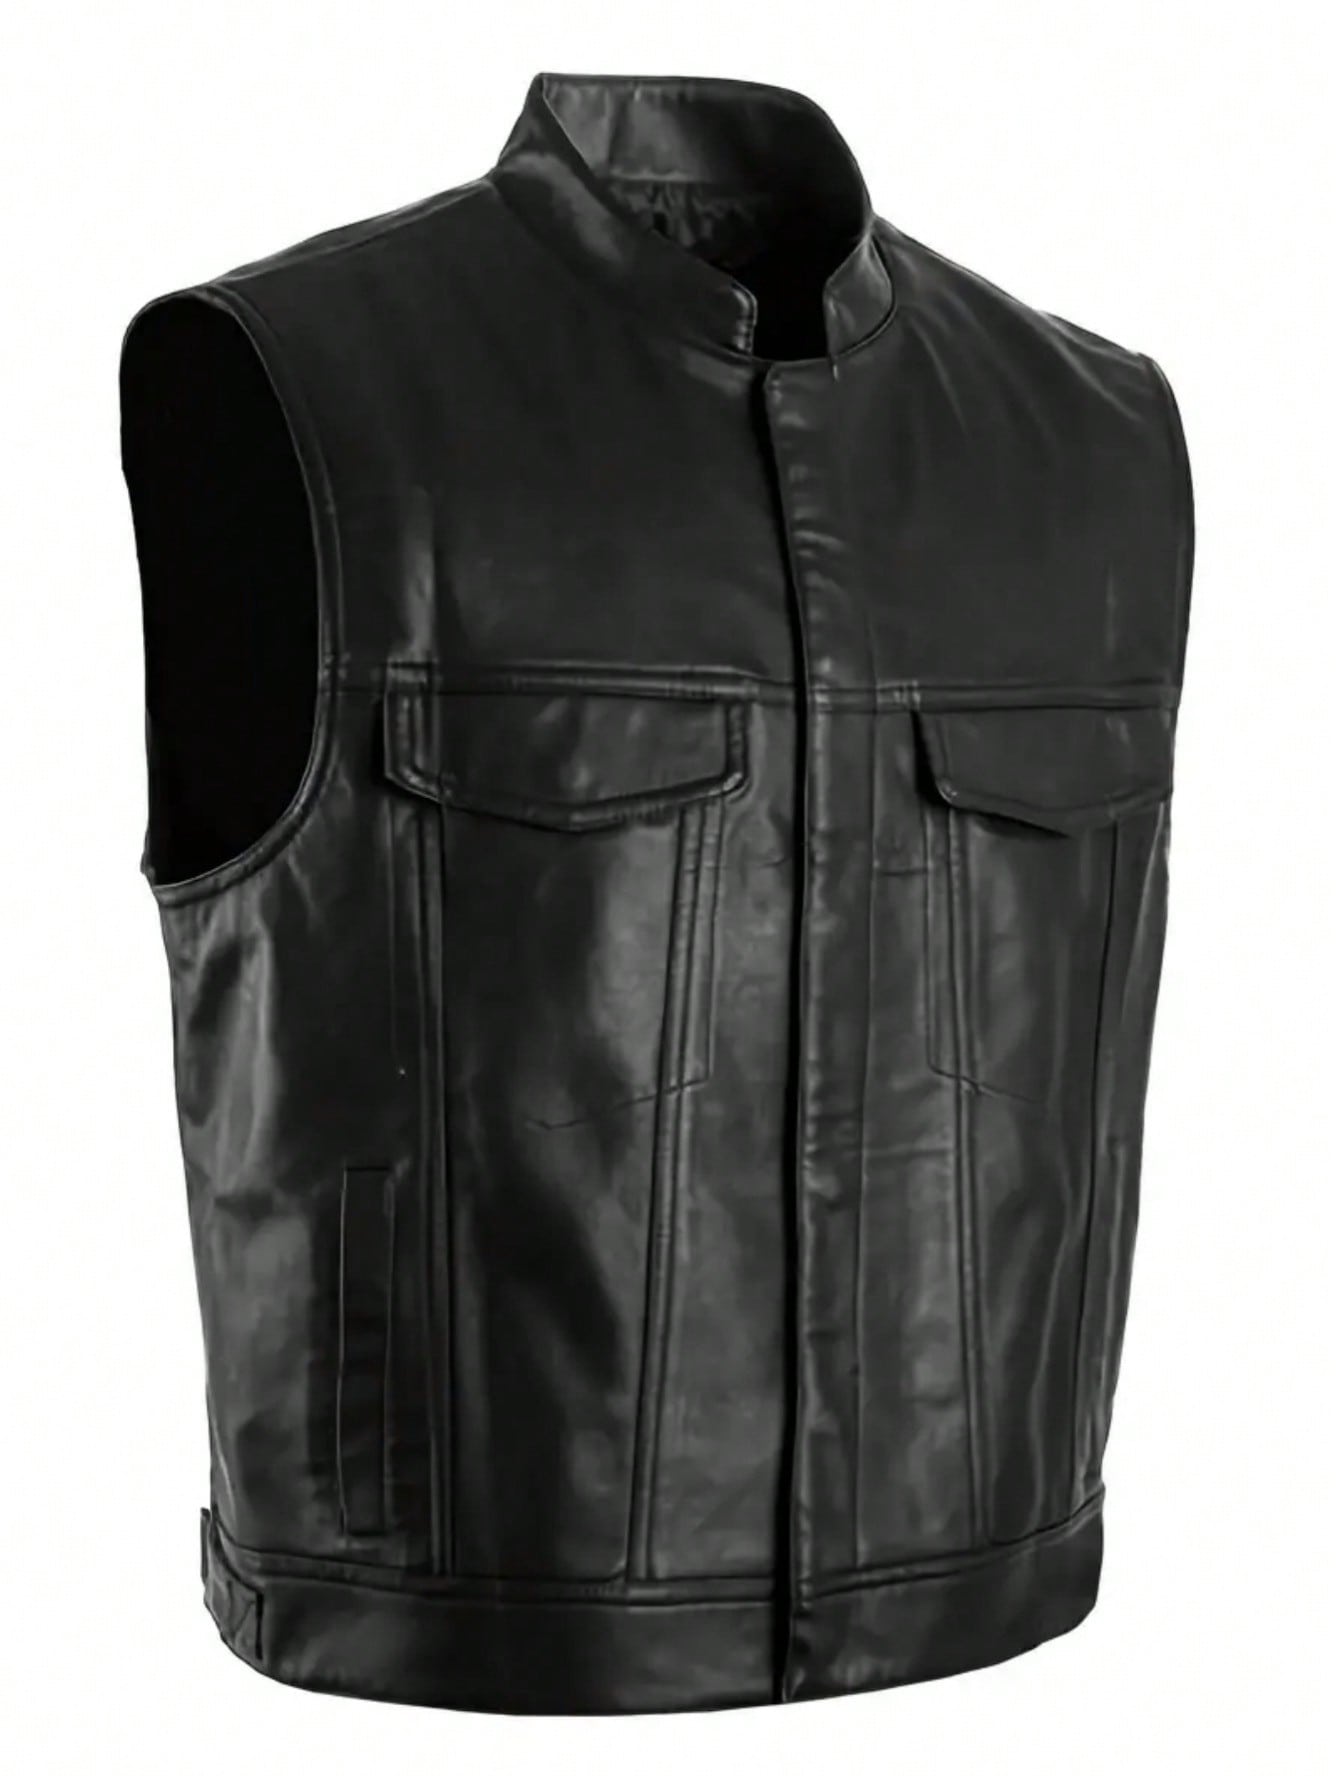 Мужской жилет из искусственной кожи с нагрудными карманами на пуговицах, черный мужской костюмный жилет облегающая деловая куртка в стиле стимпанк жилетка в западном стиле